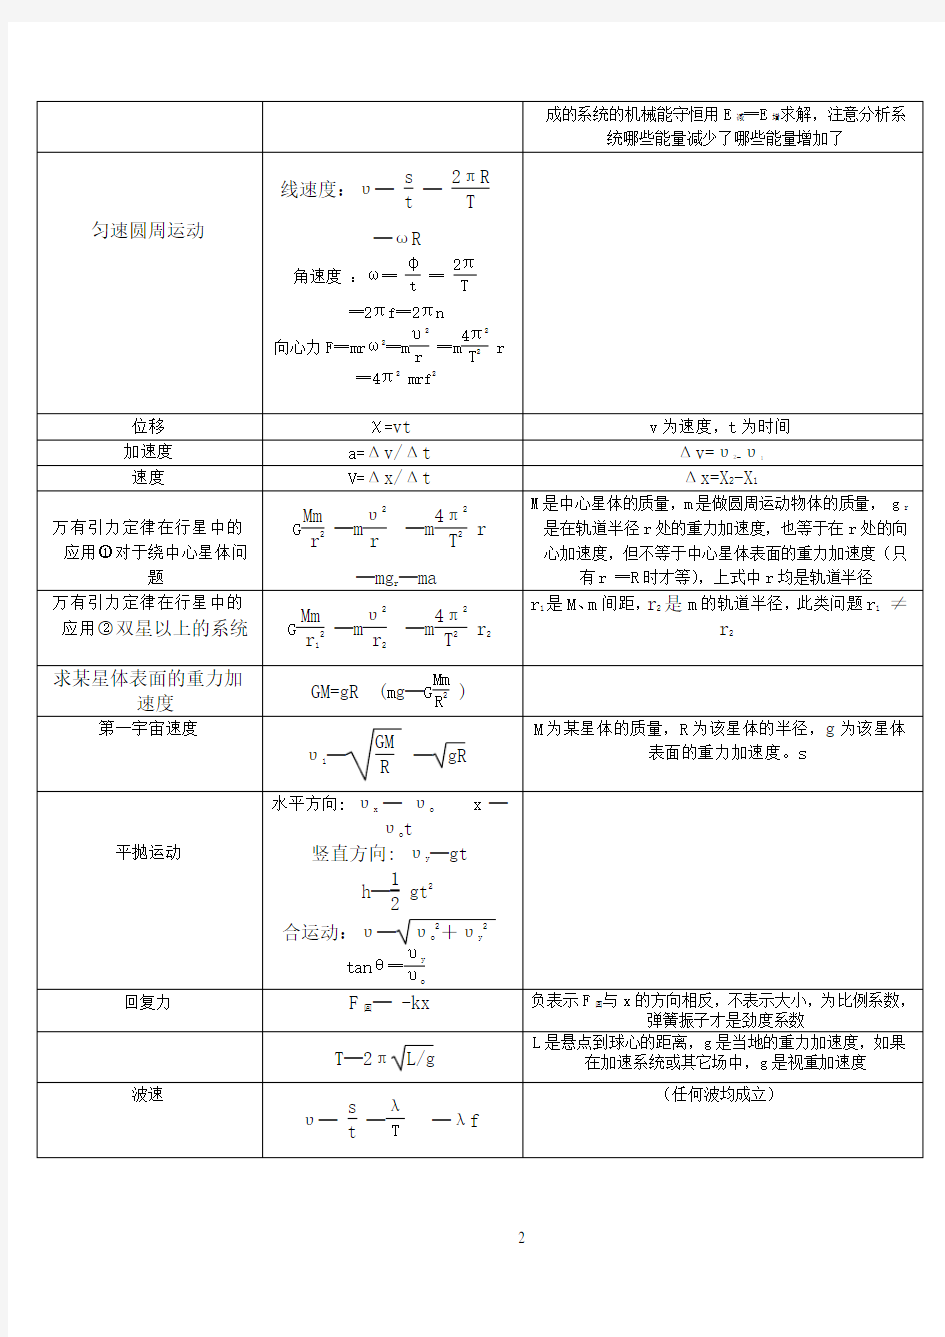 2018年人教版高中物理公式手册(完整版)